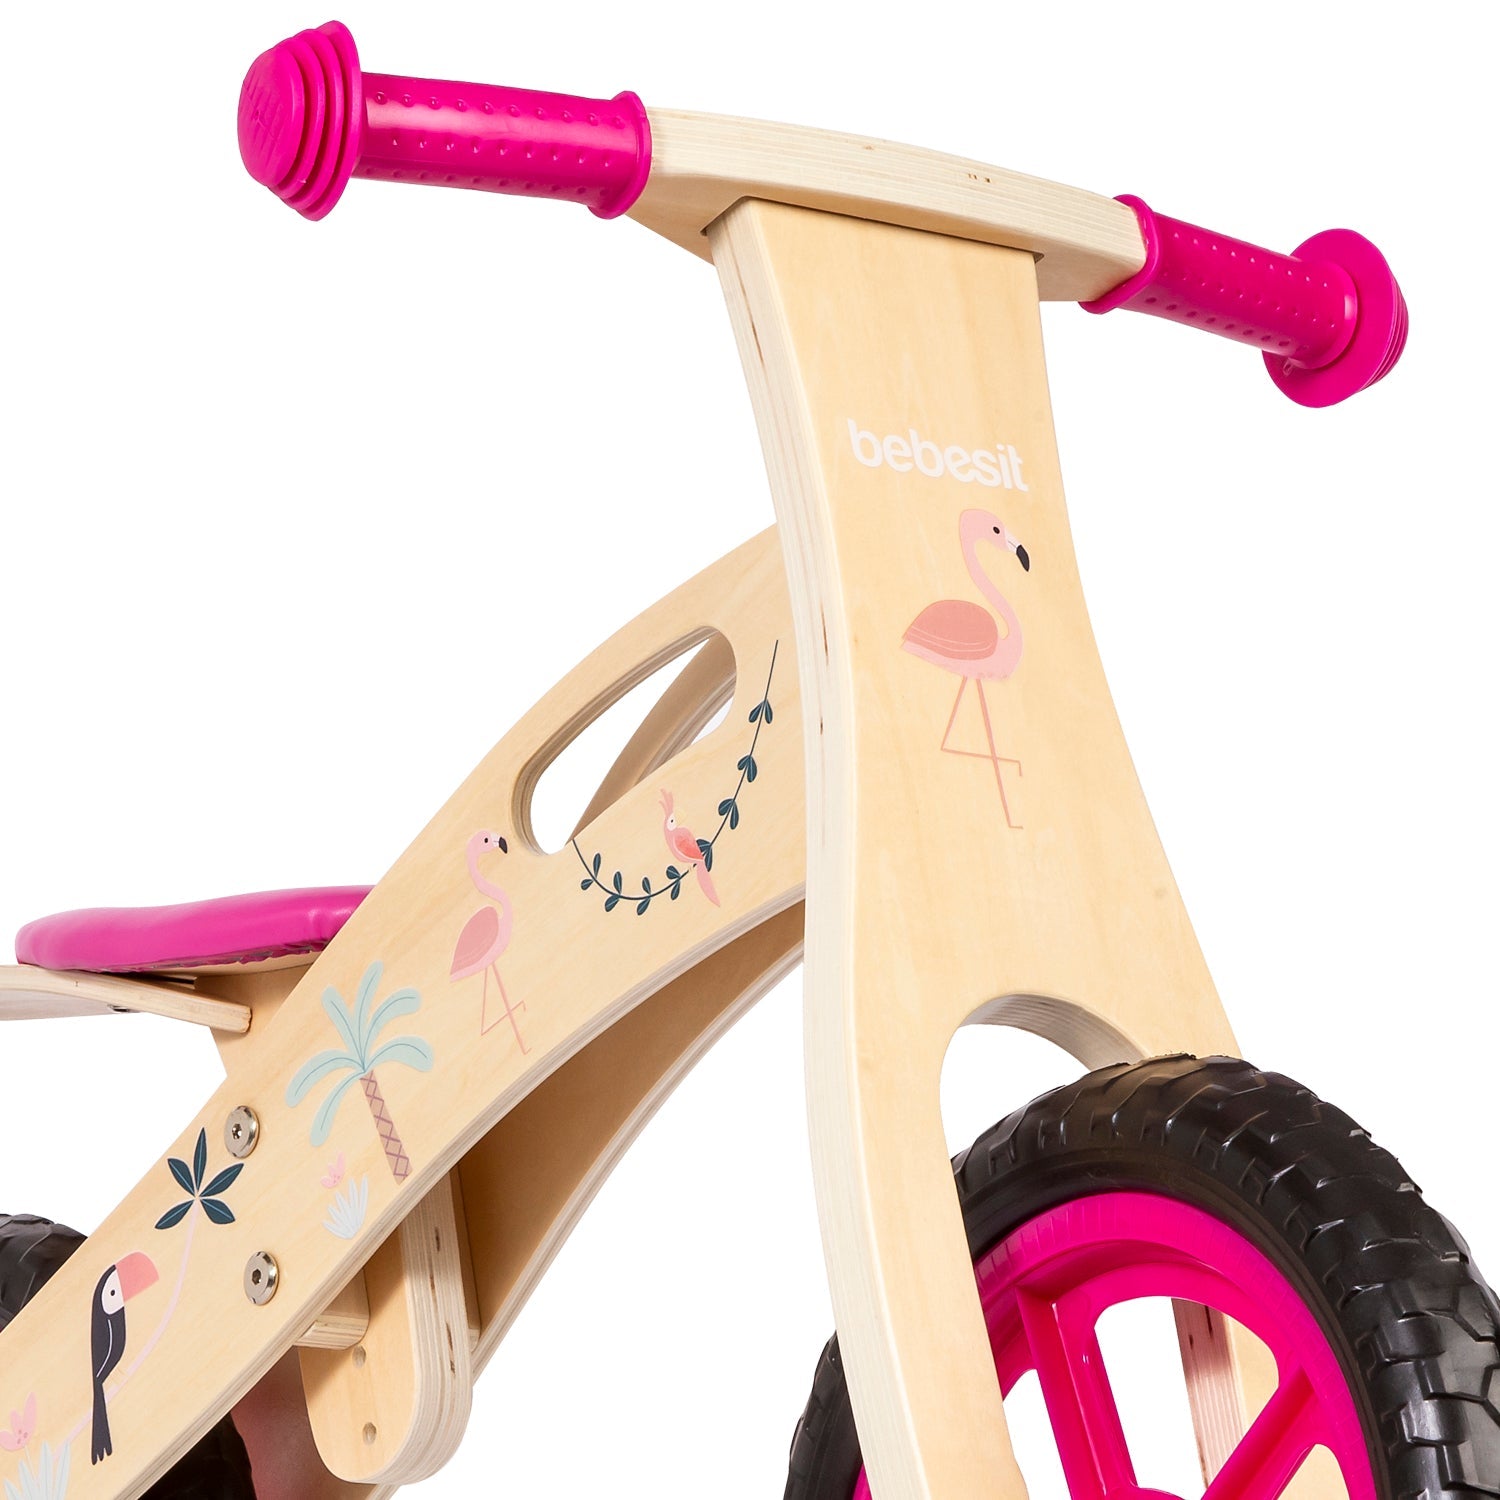 Balance Bike Bicicleta de Equilibrio Aprendizaje Madera Flamenco Rosa